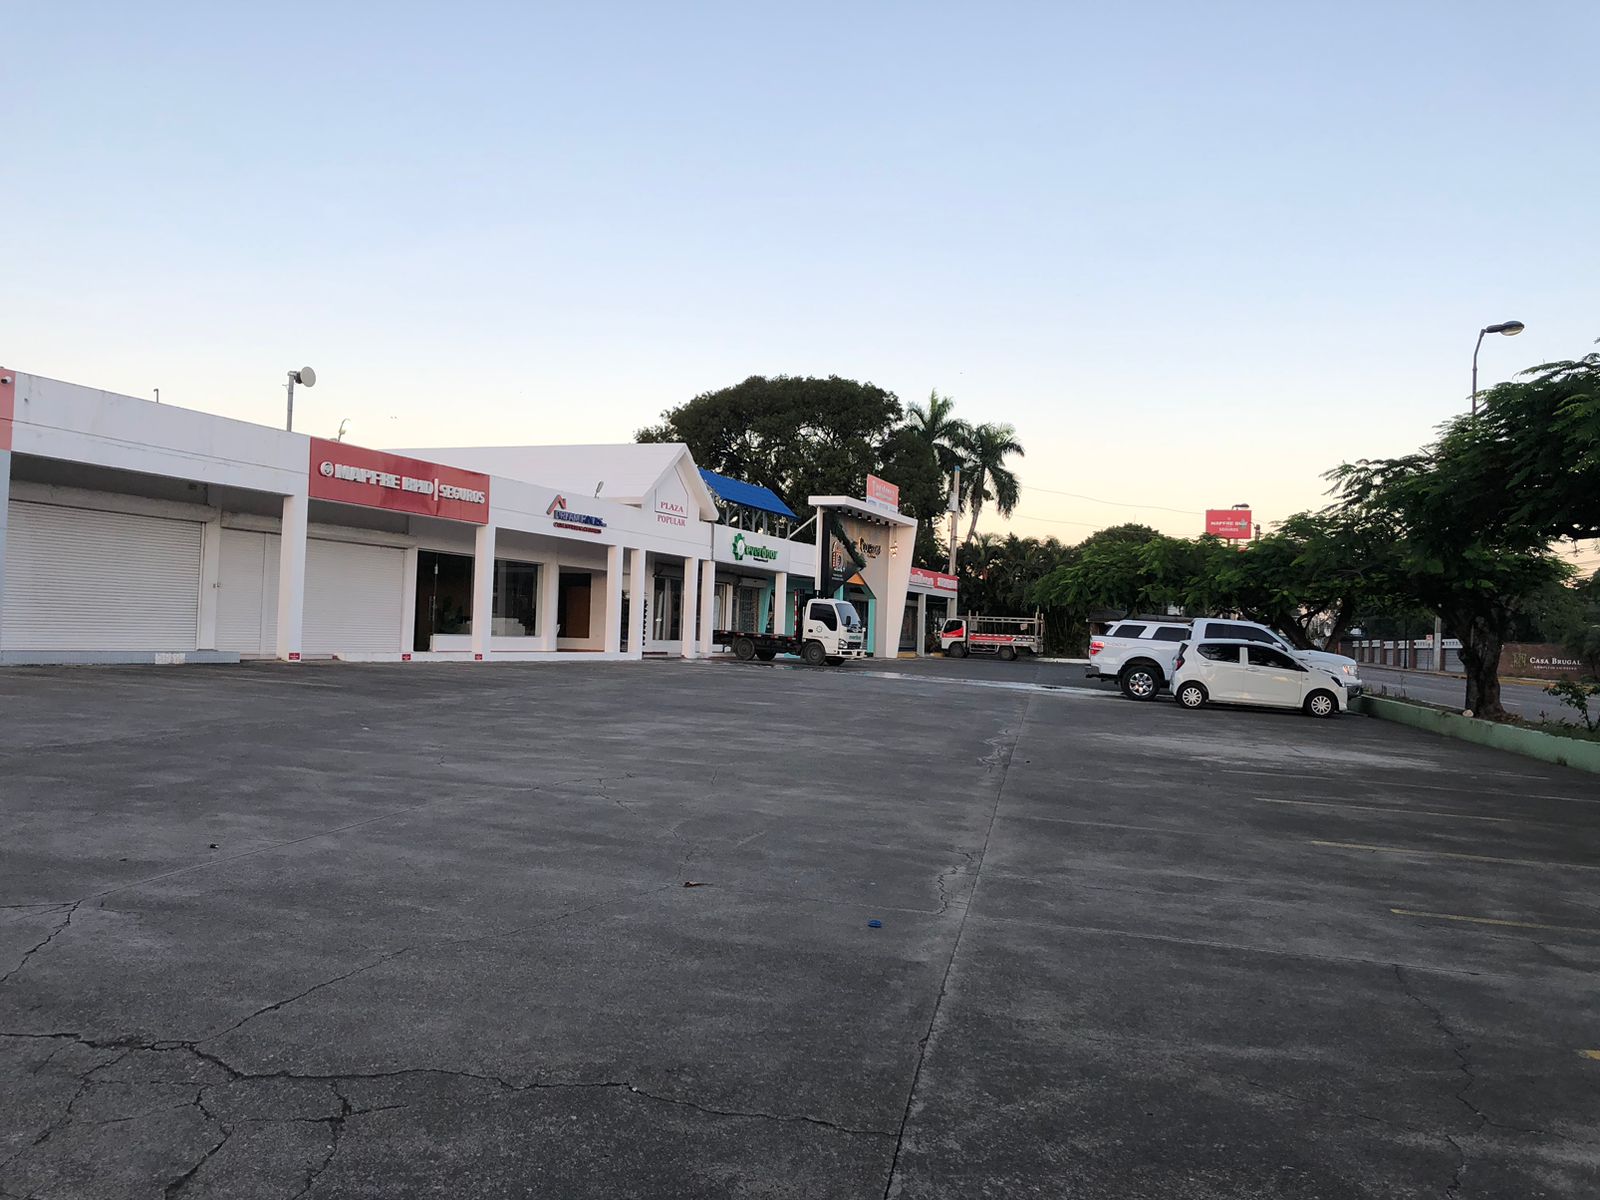  En venta 4 locales comerciales, ubicados en la Plaza Popular, Puerto Plata